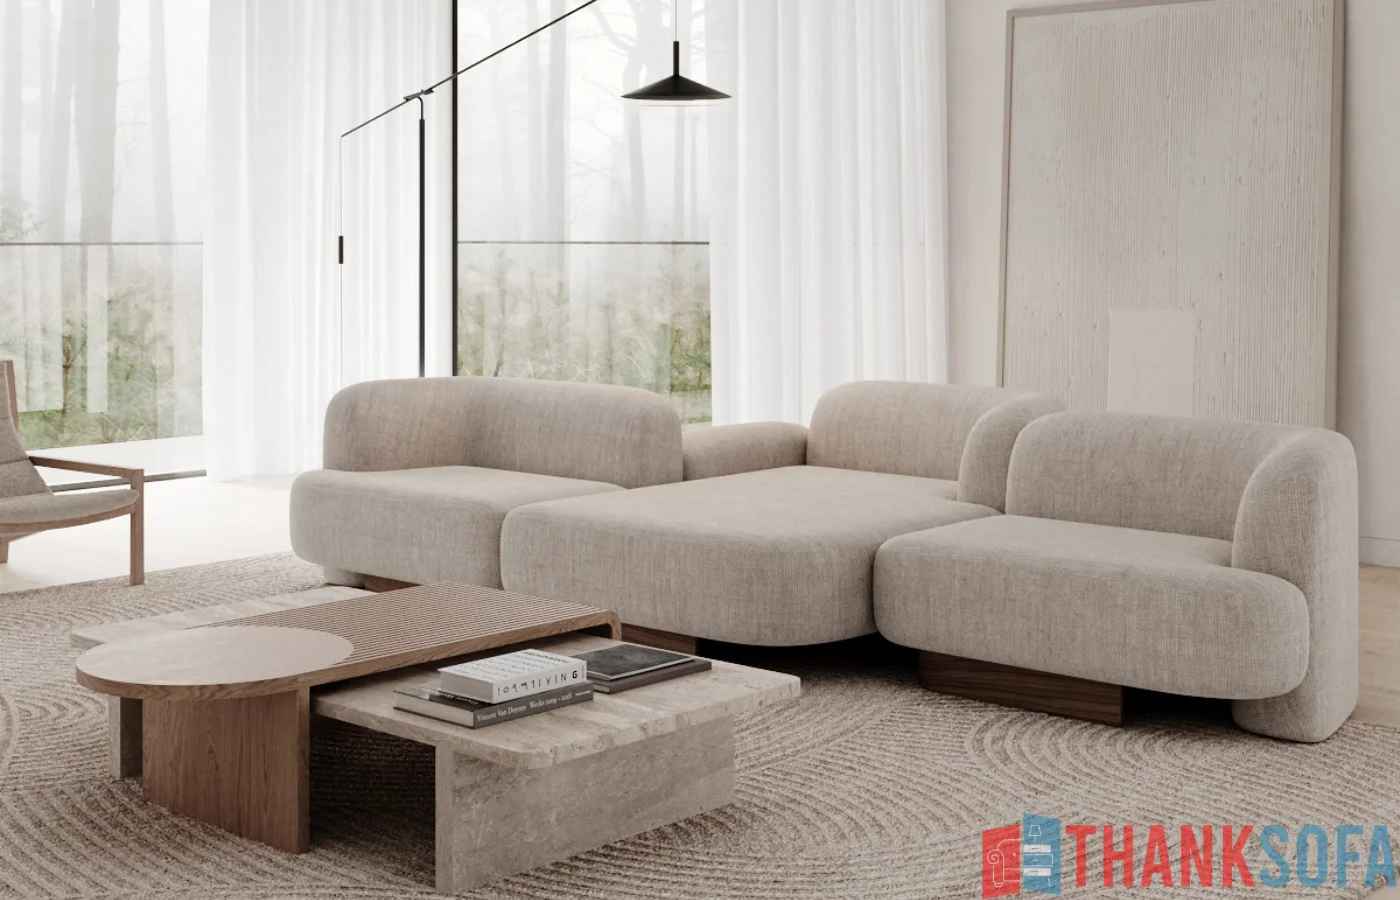 Mẫu Ghế Sofa Đẹp - Ghế Sa lông, Salon, Sopha - Bàn Ghế Sofa - Sofa Couch - ThankSofa Mẫu 83